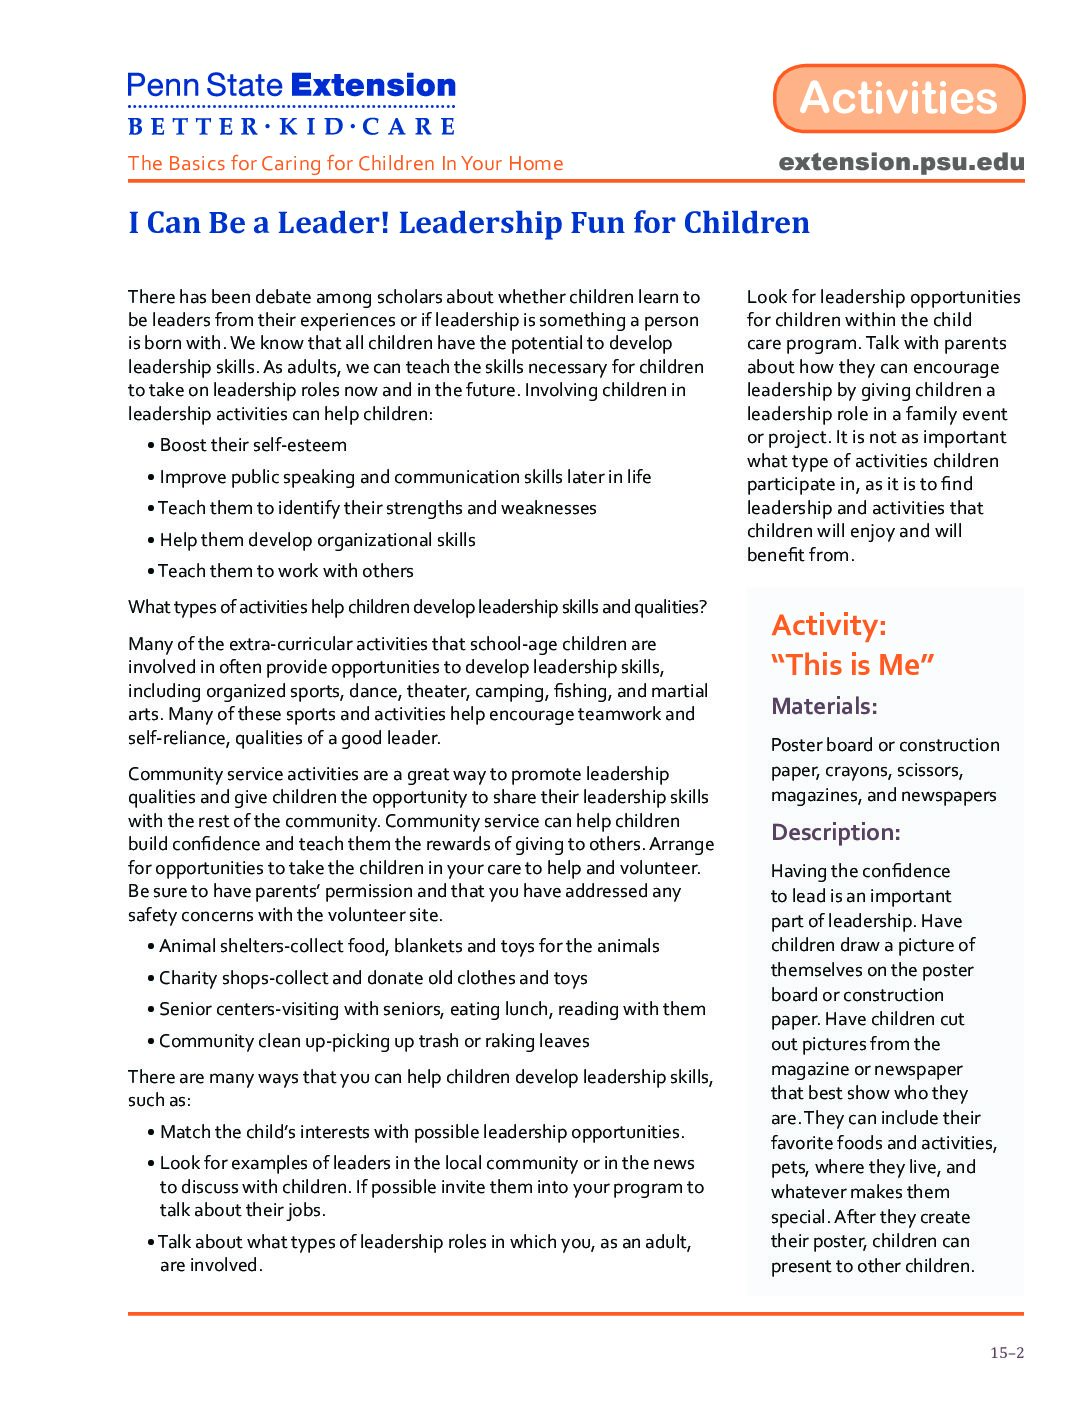 Leadership für Kinder